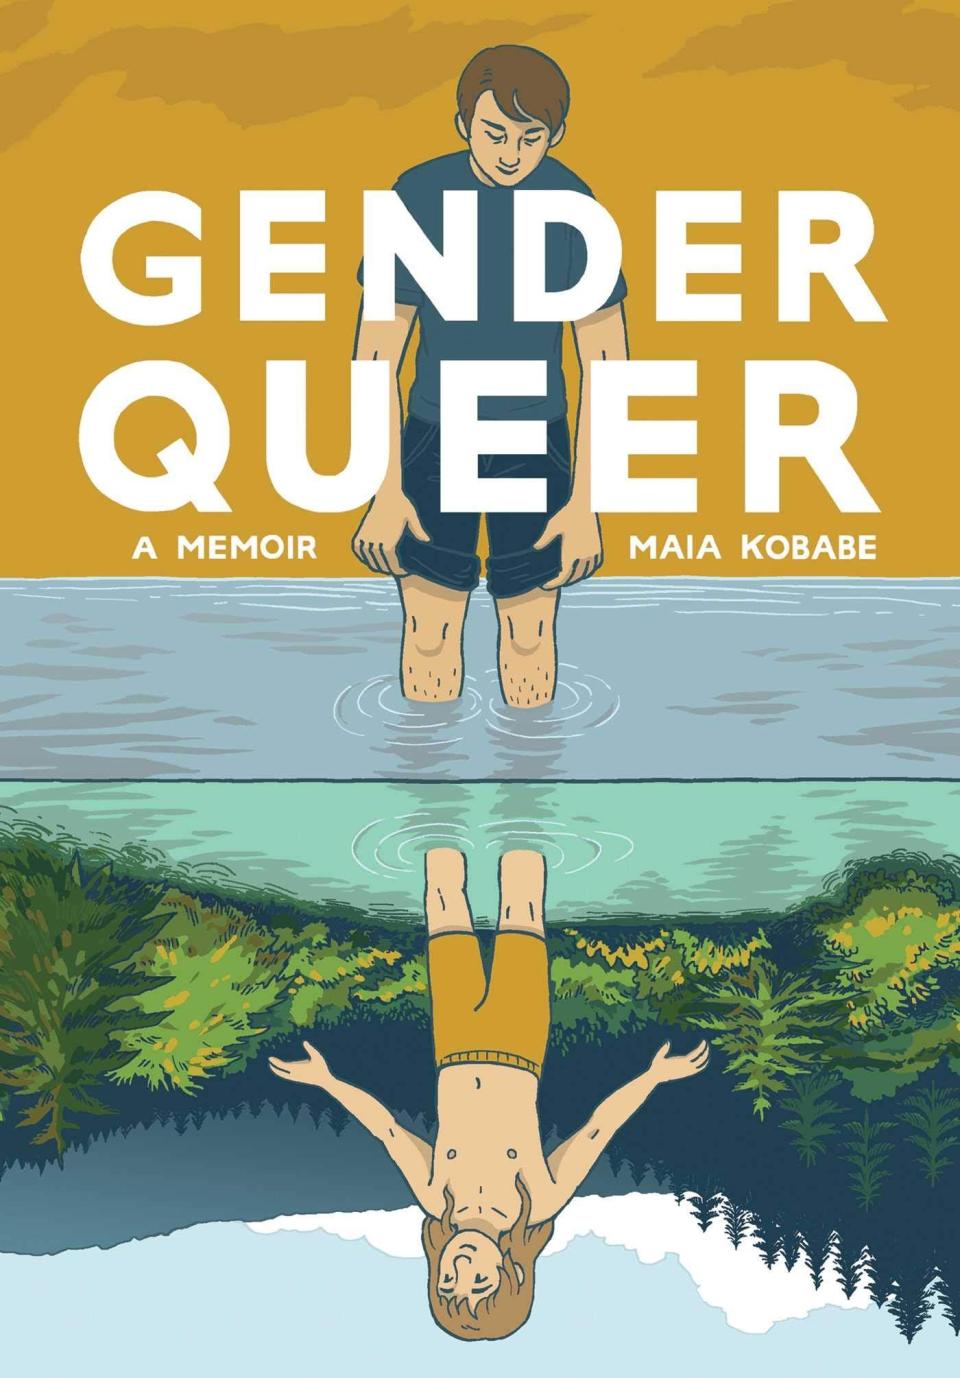 "Gender Queer"